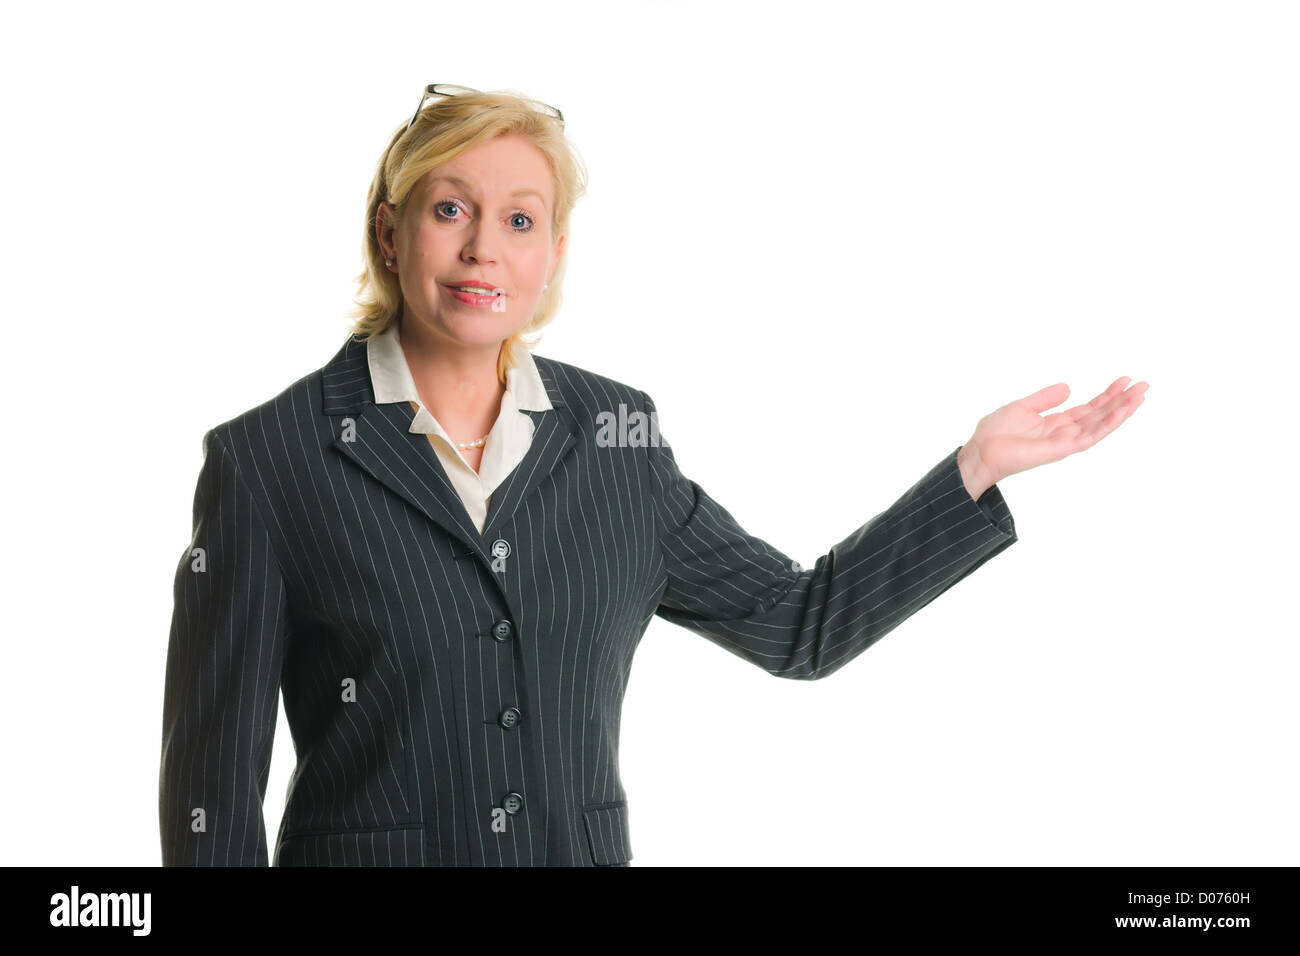 Caucasian businesswoman démontrer quelque chose de blanc, fond isolé. Banque D'Images